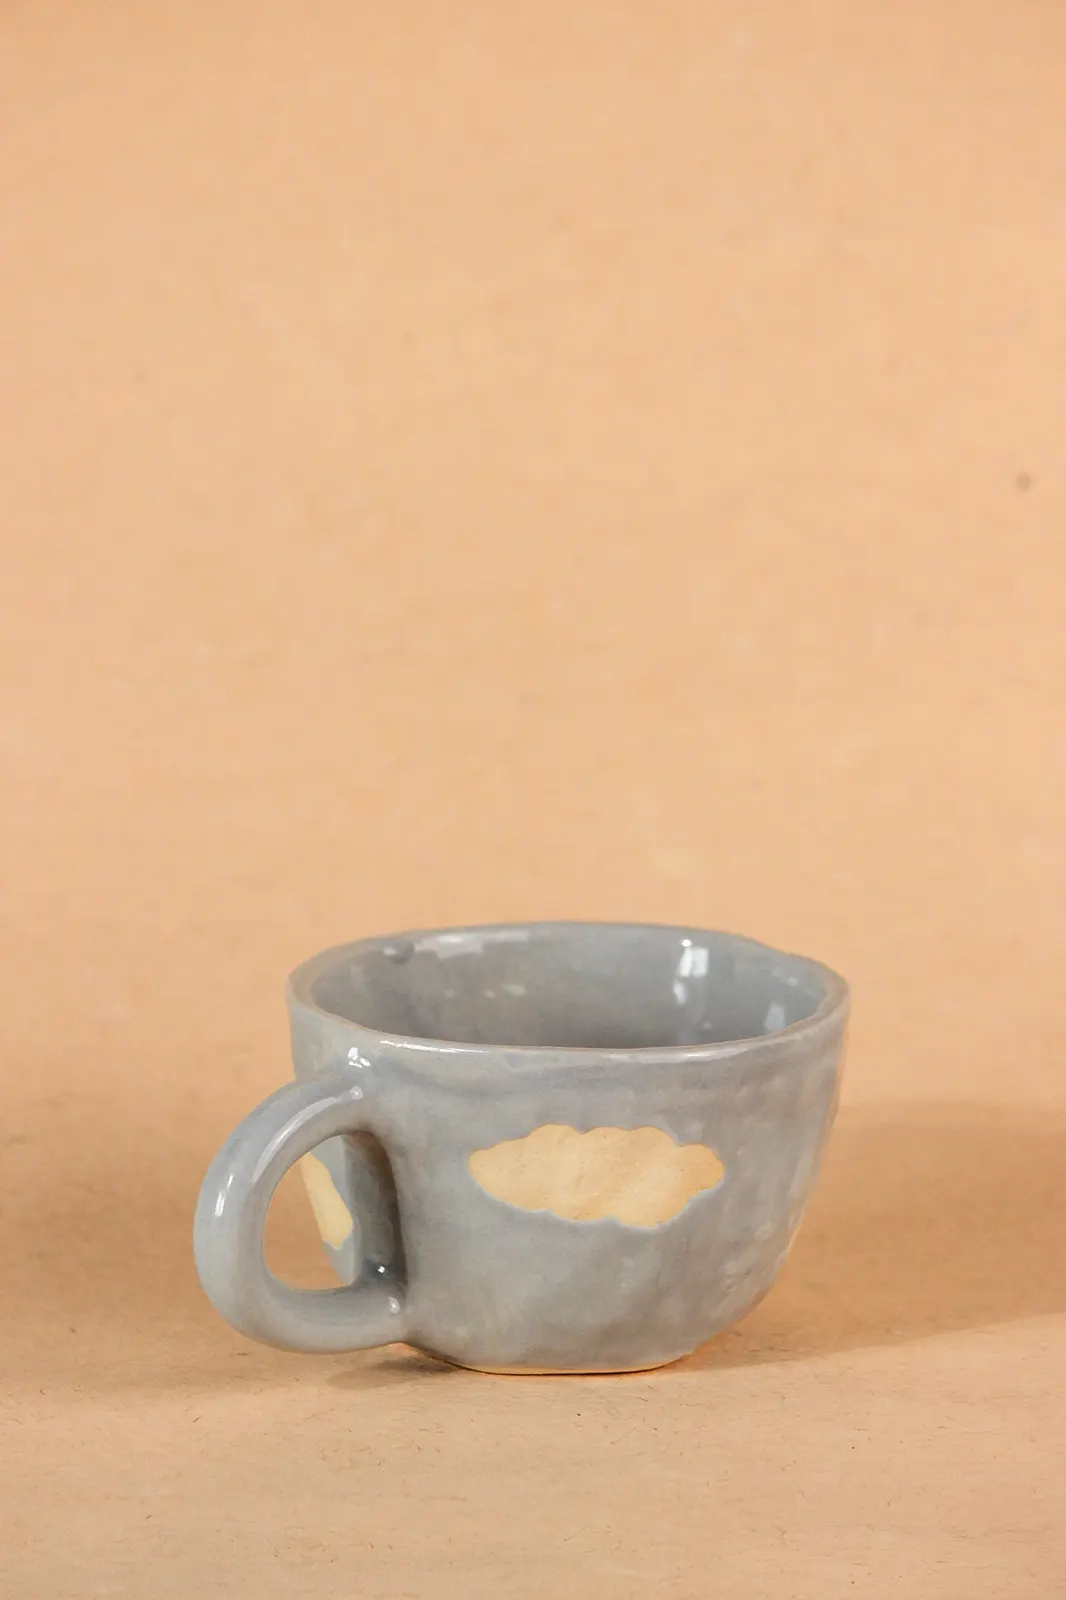 Light blue ceramic cloud mug saucer set, blue mug, coffee mug with saucer, coffee cup set with saucer, ceramic cup set, handmade coffee mugs, coffee mugs, Toh, Sepia Stories